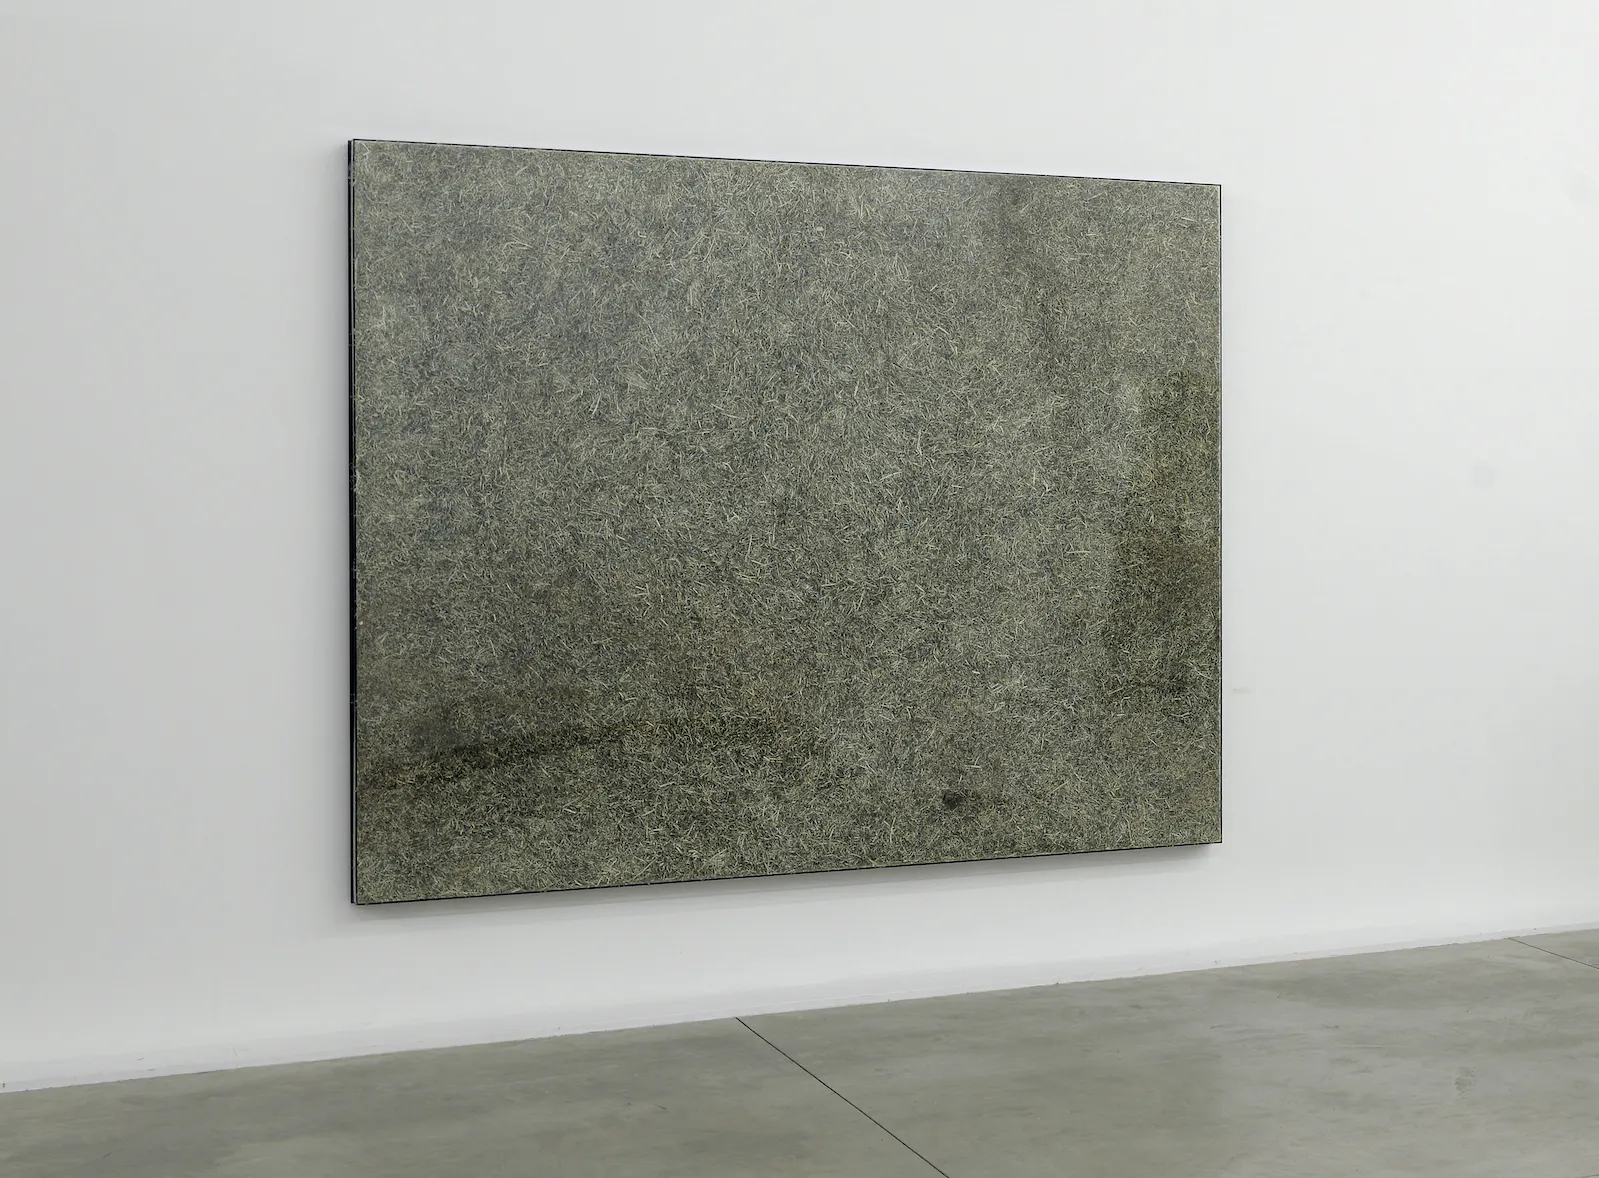 Shredded Value, Jan Henderikse, 1979-2014 - 200 × 250 × 8 cm